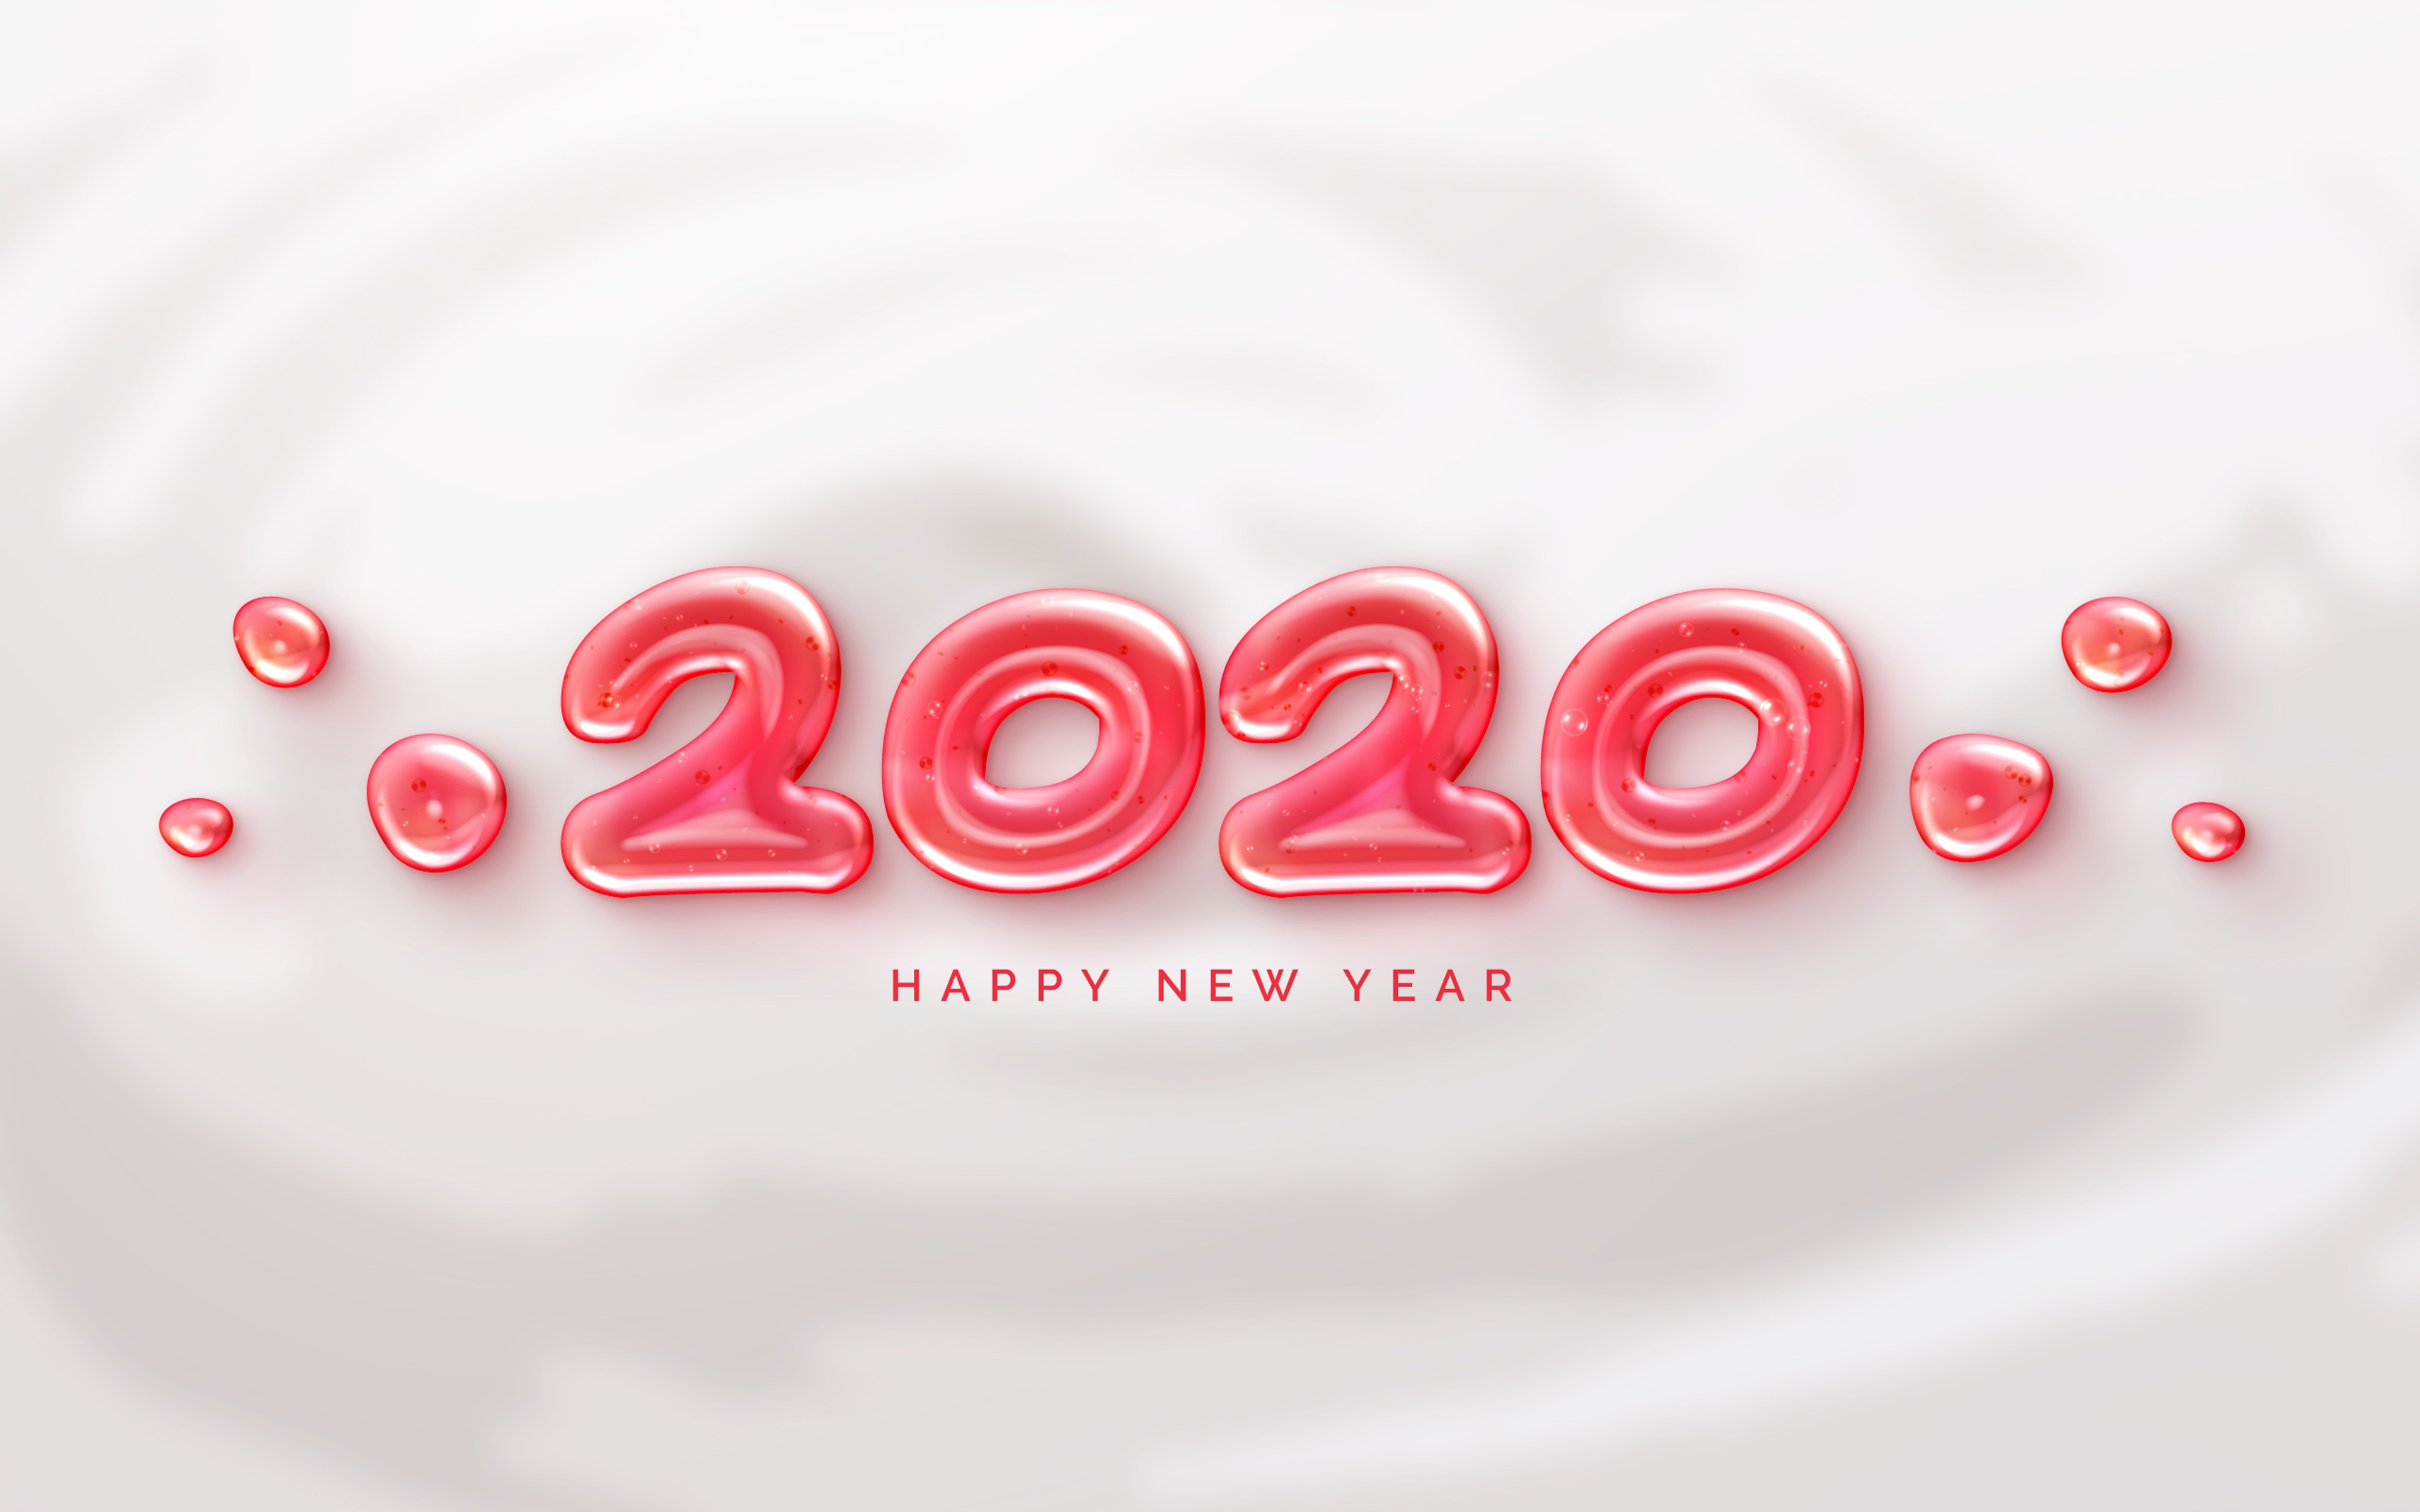 PCデスクトップに新年, ホリデー, あけましておめでとう, 2020年新年画像を無料でダウンロード